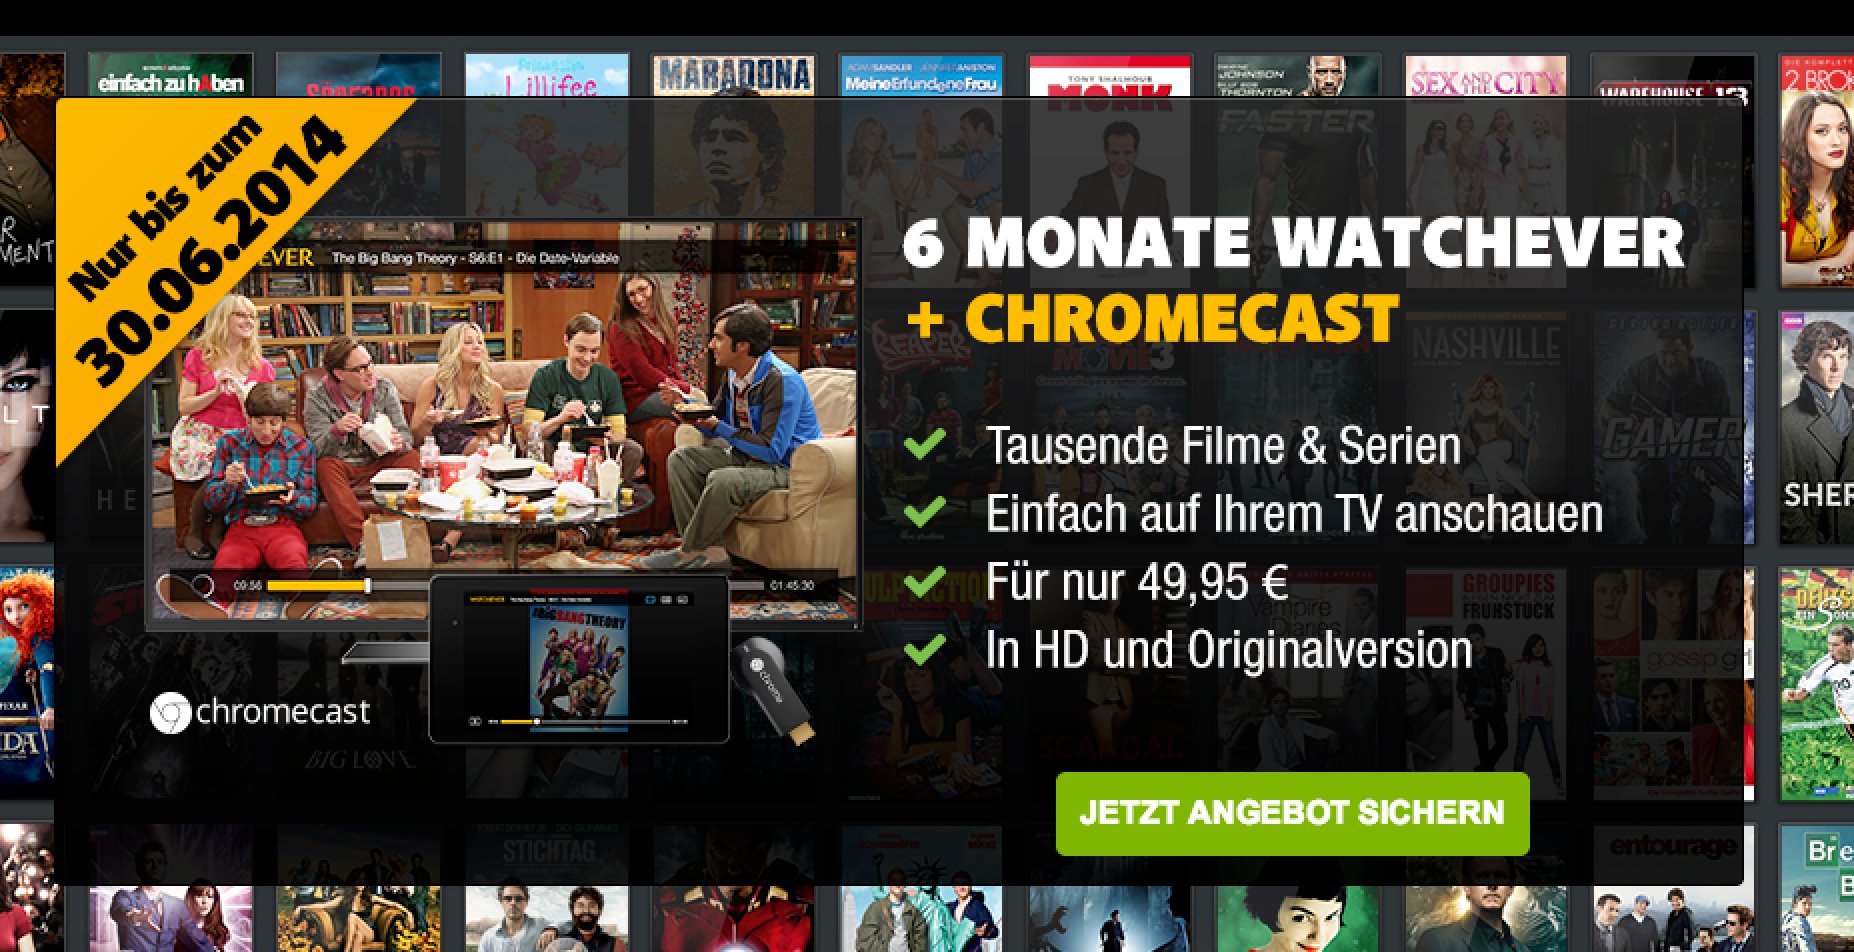 UPDATE: Watchever Aktion mit gratis Chromecast! 1